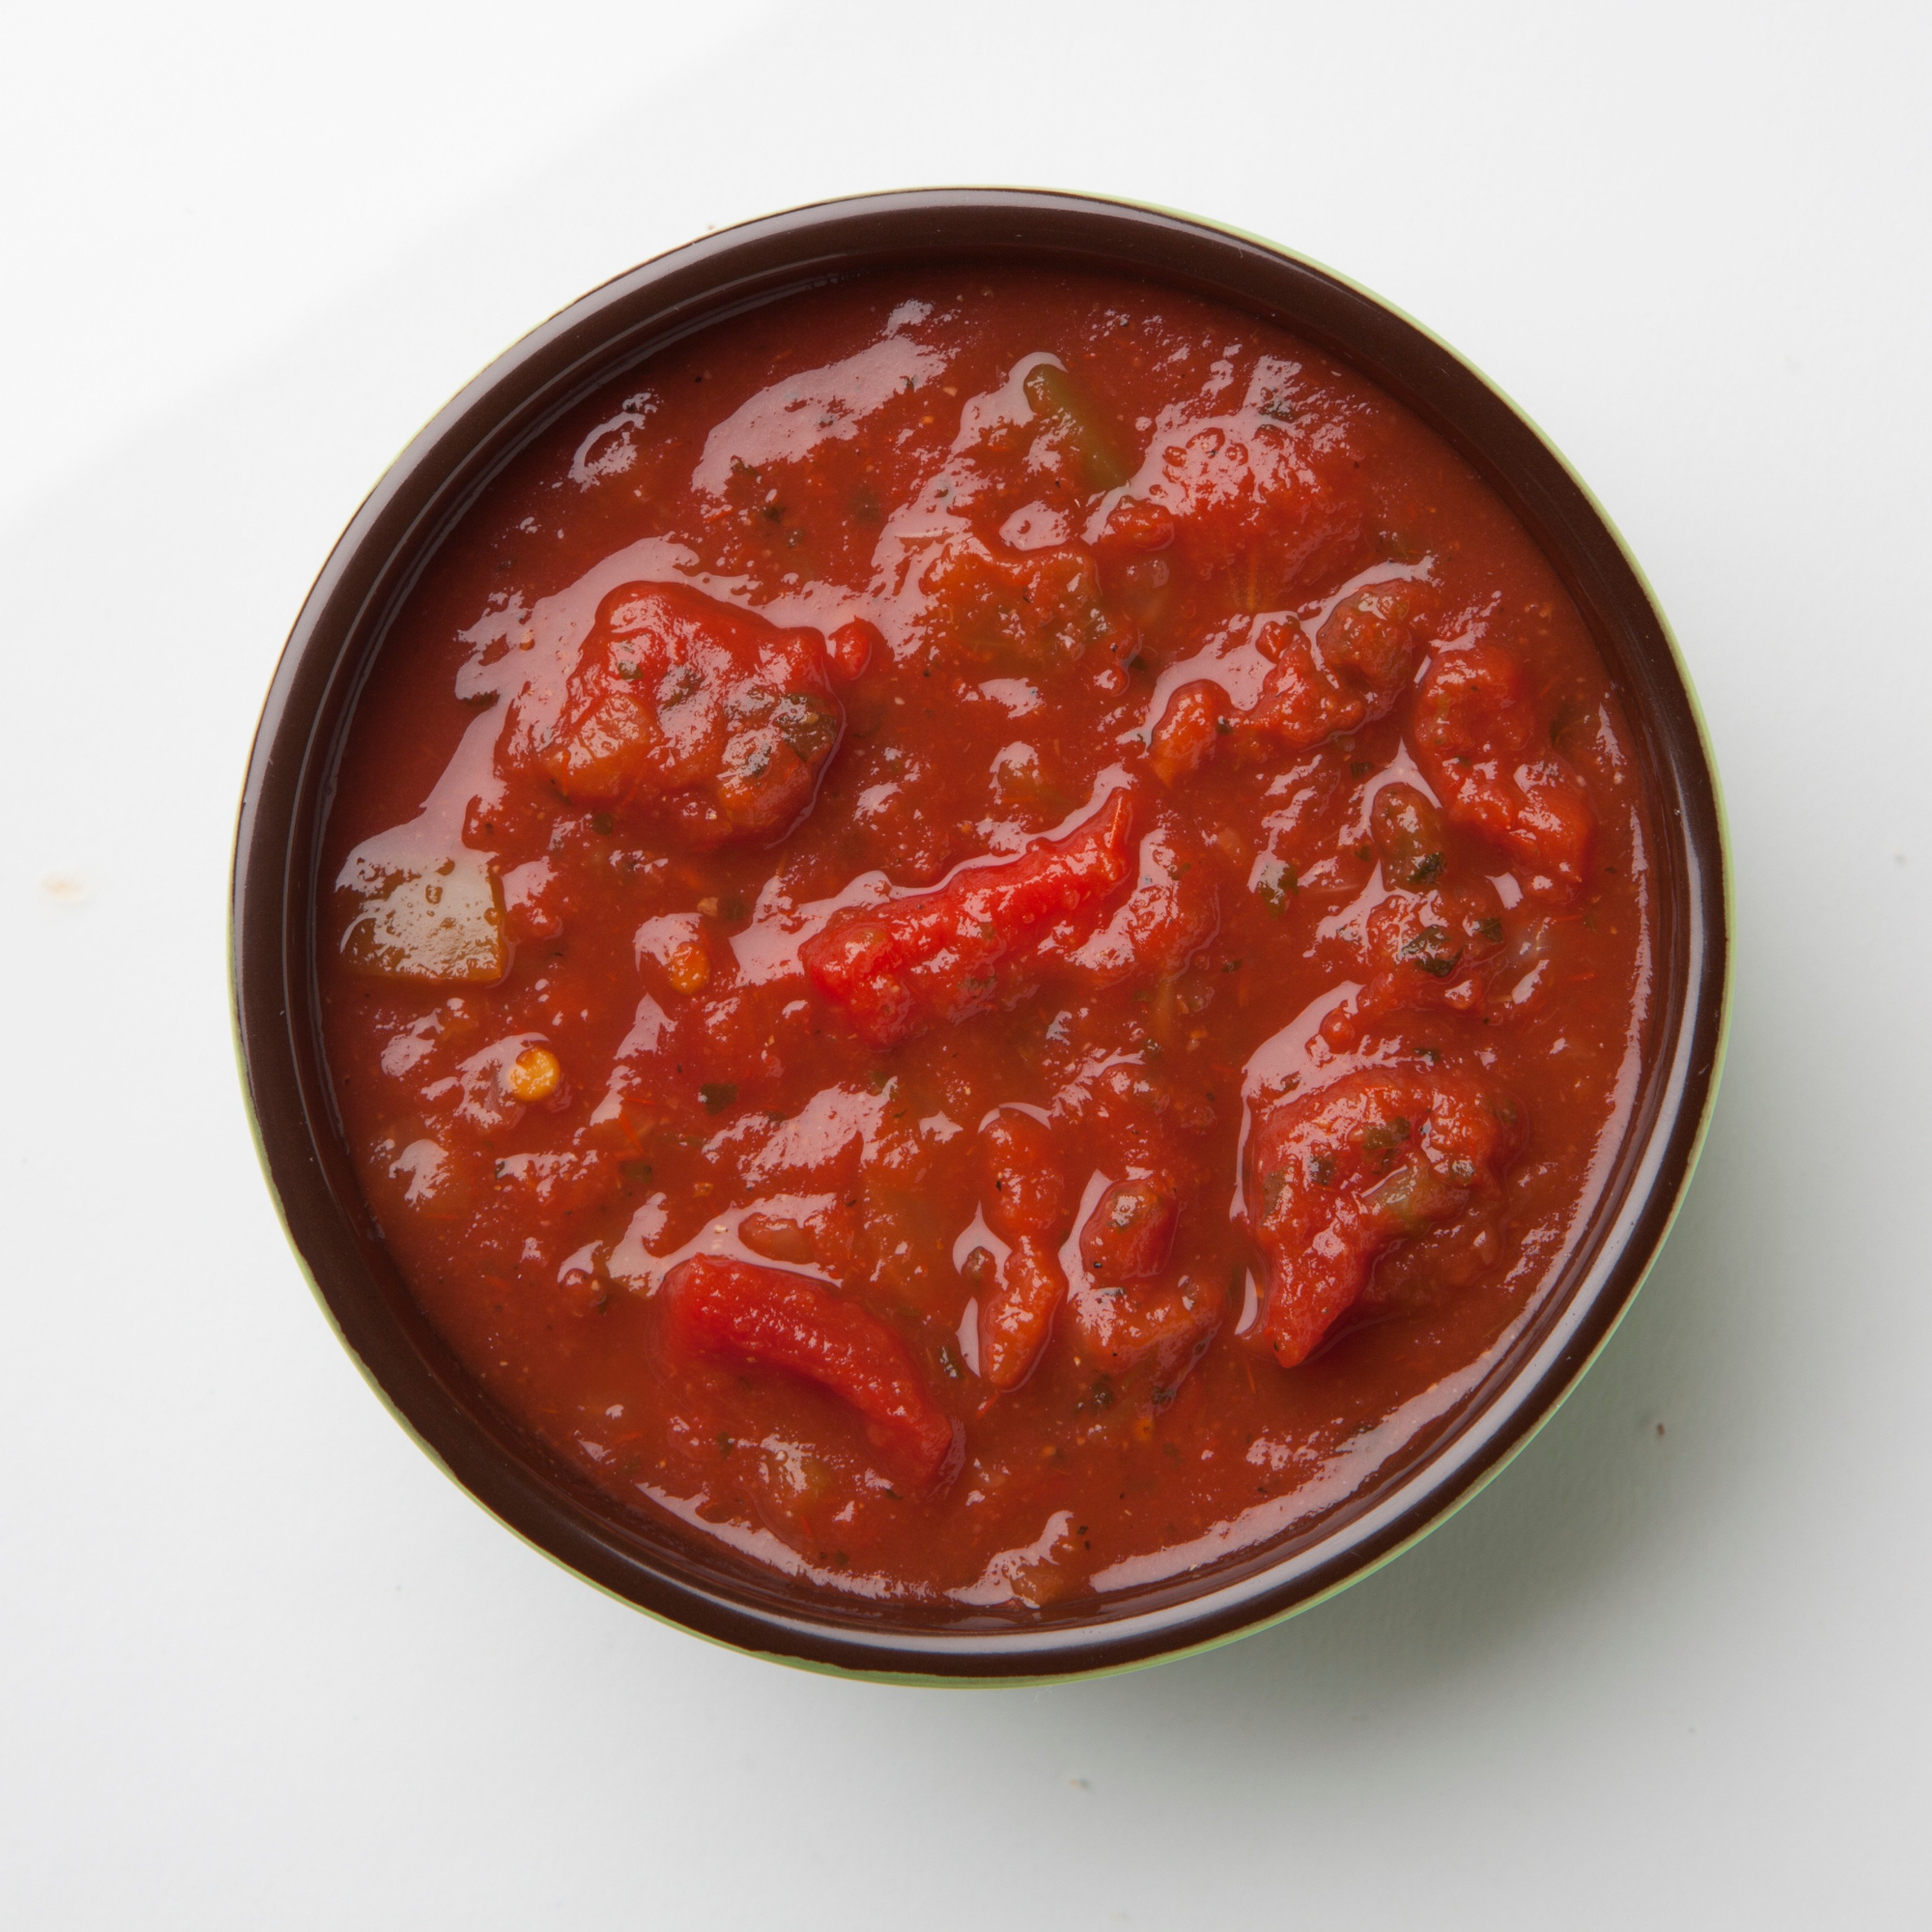 томатный соус из томатной пасты для пиццы фото 110